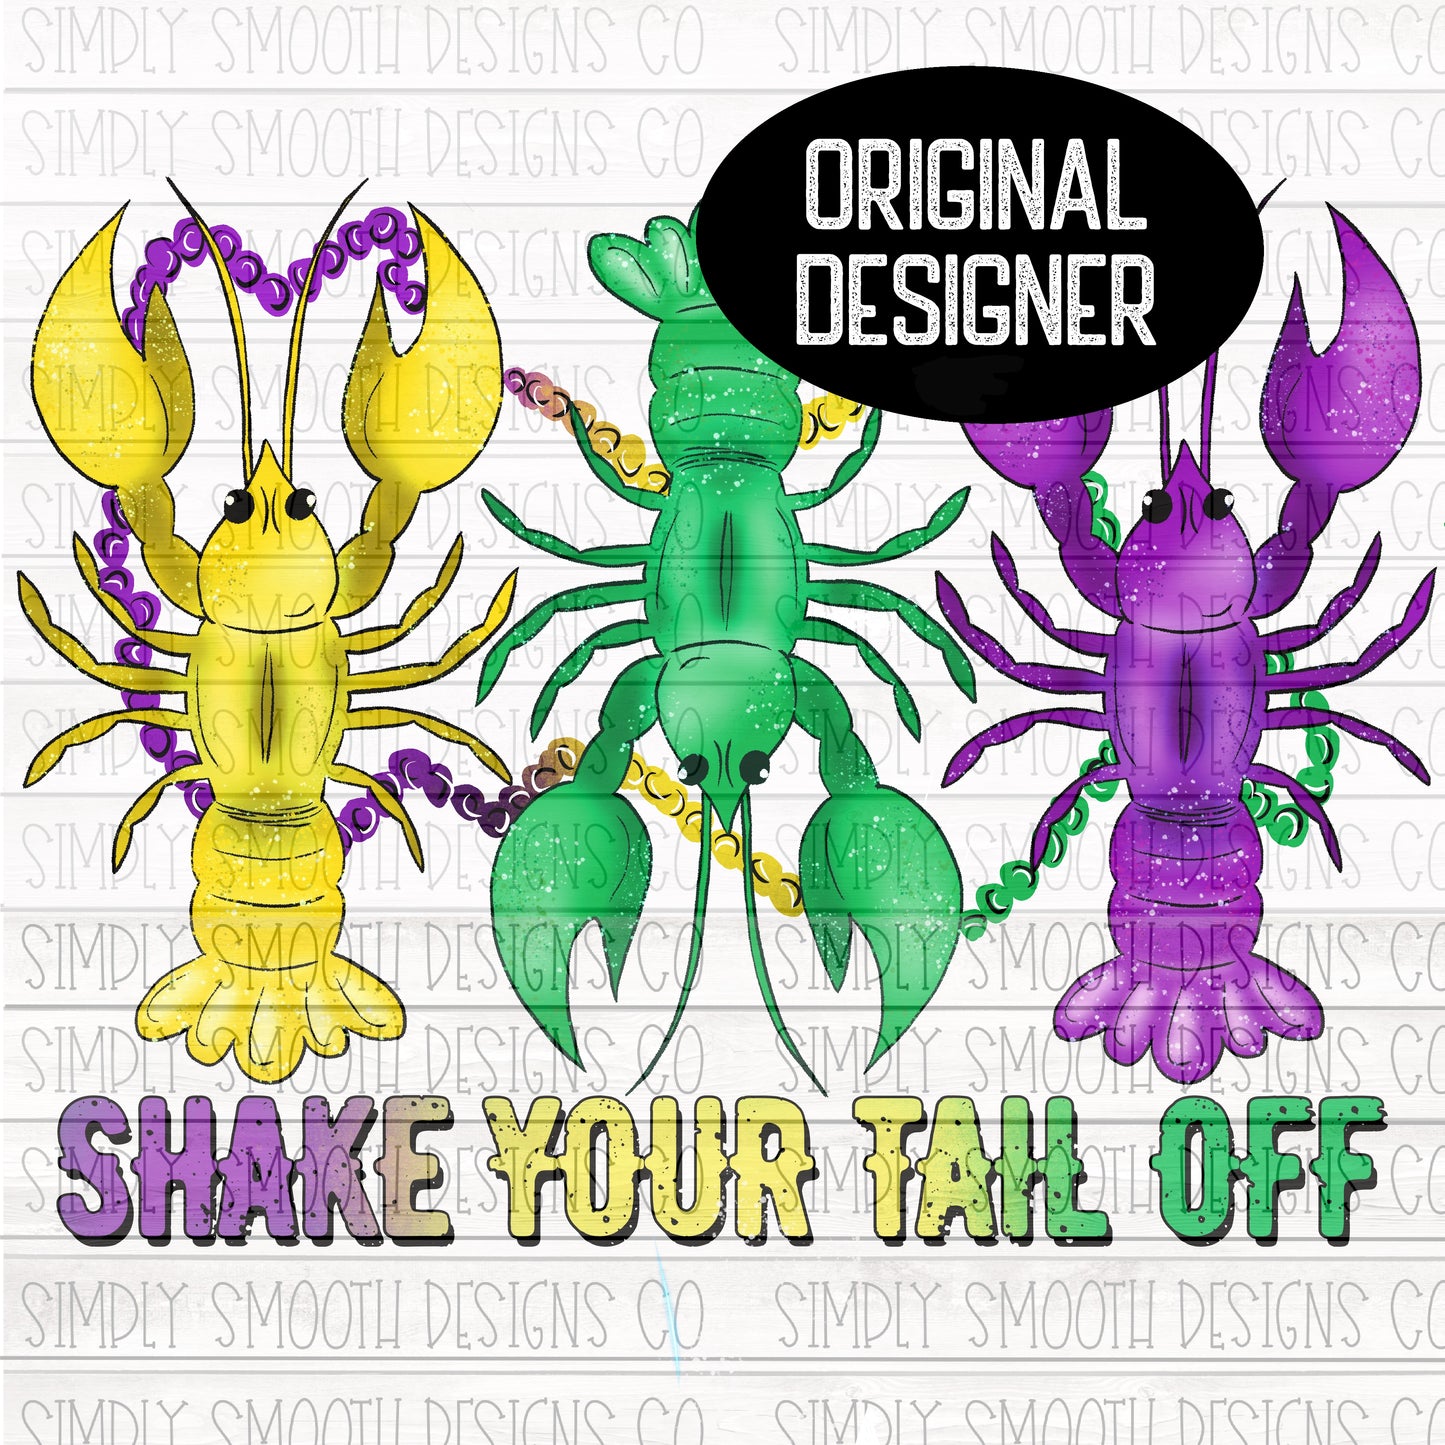 Shake your tail off crawfish Mardi Gras